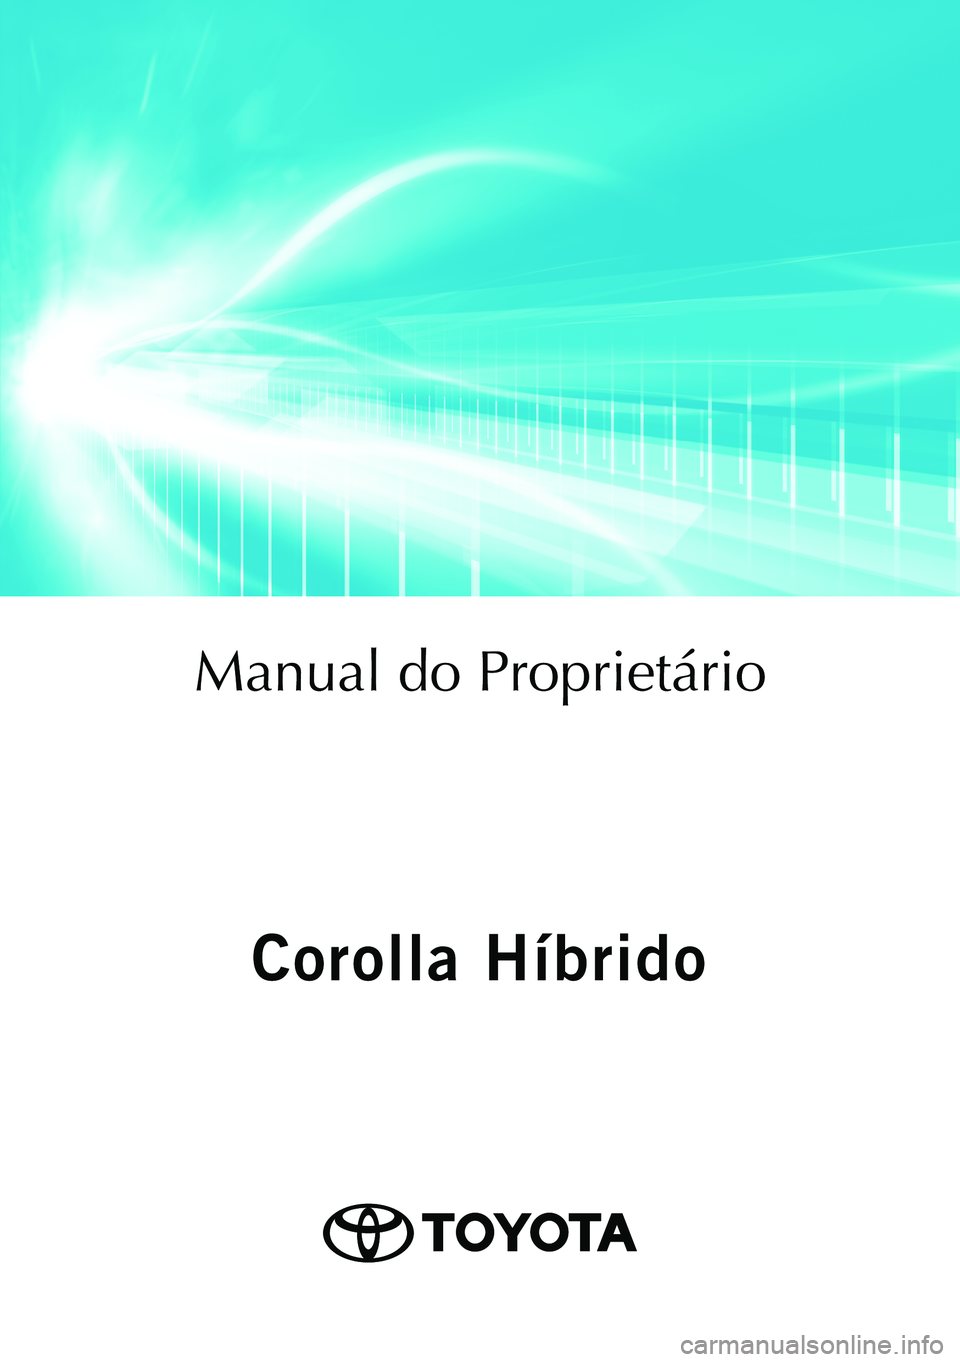 TOYOTA COROLLA 2021  Manual de utilização (in Portuguese) Corolla Híbrido
Corolla Híbrido
Manual do Proprietário
Mod. OM12P19PT
Public. N.º OM12P19E
ORGAL-PORTO 